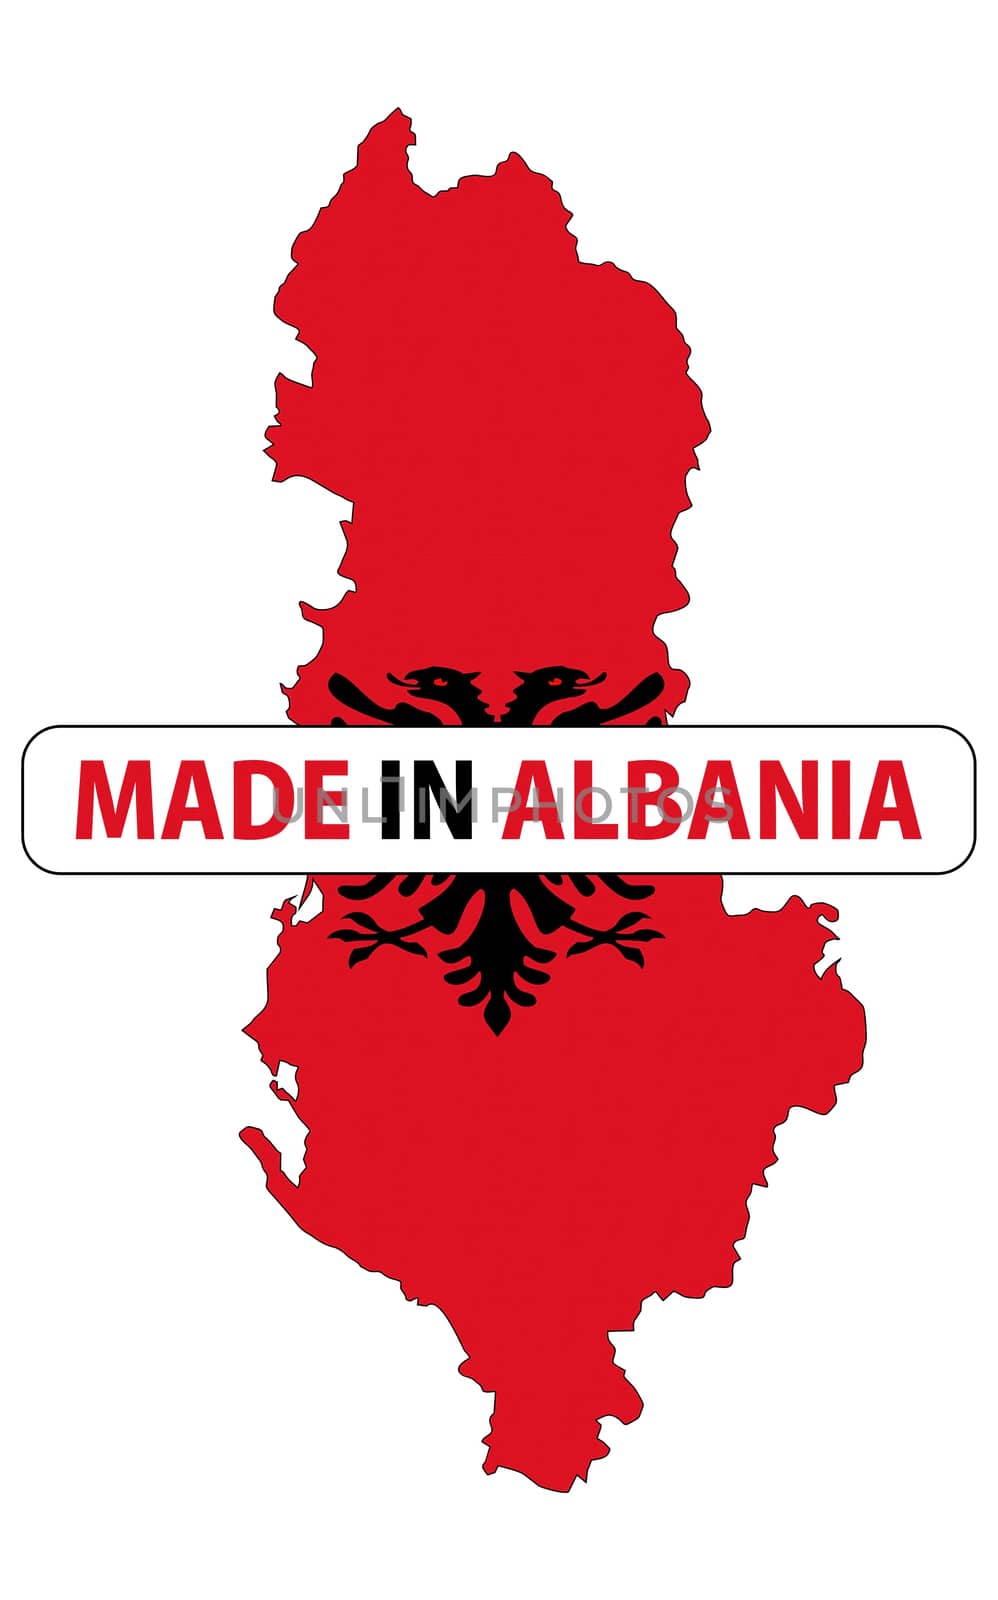 made in albania by tony4urban